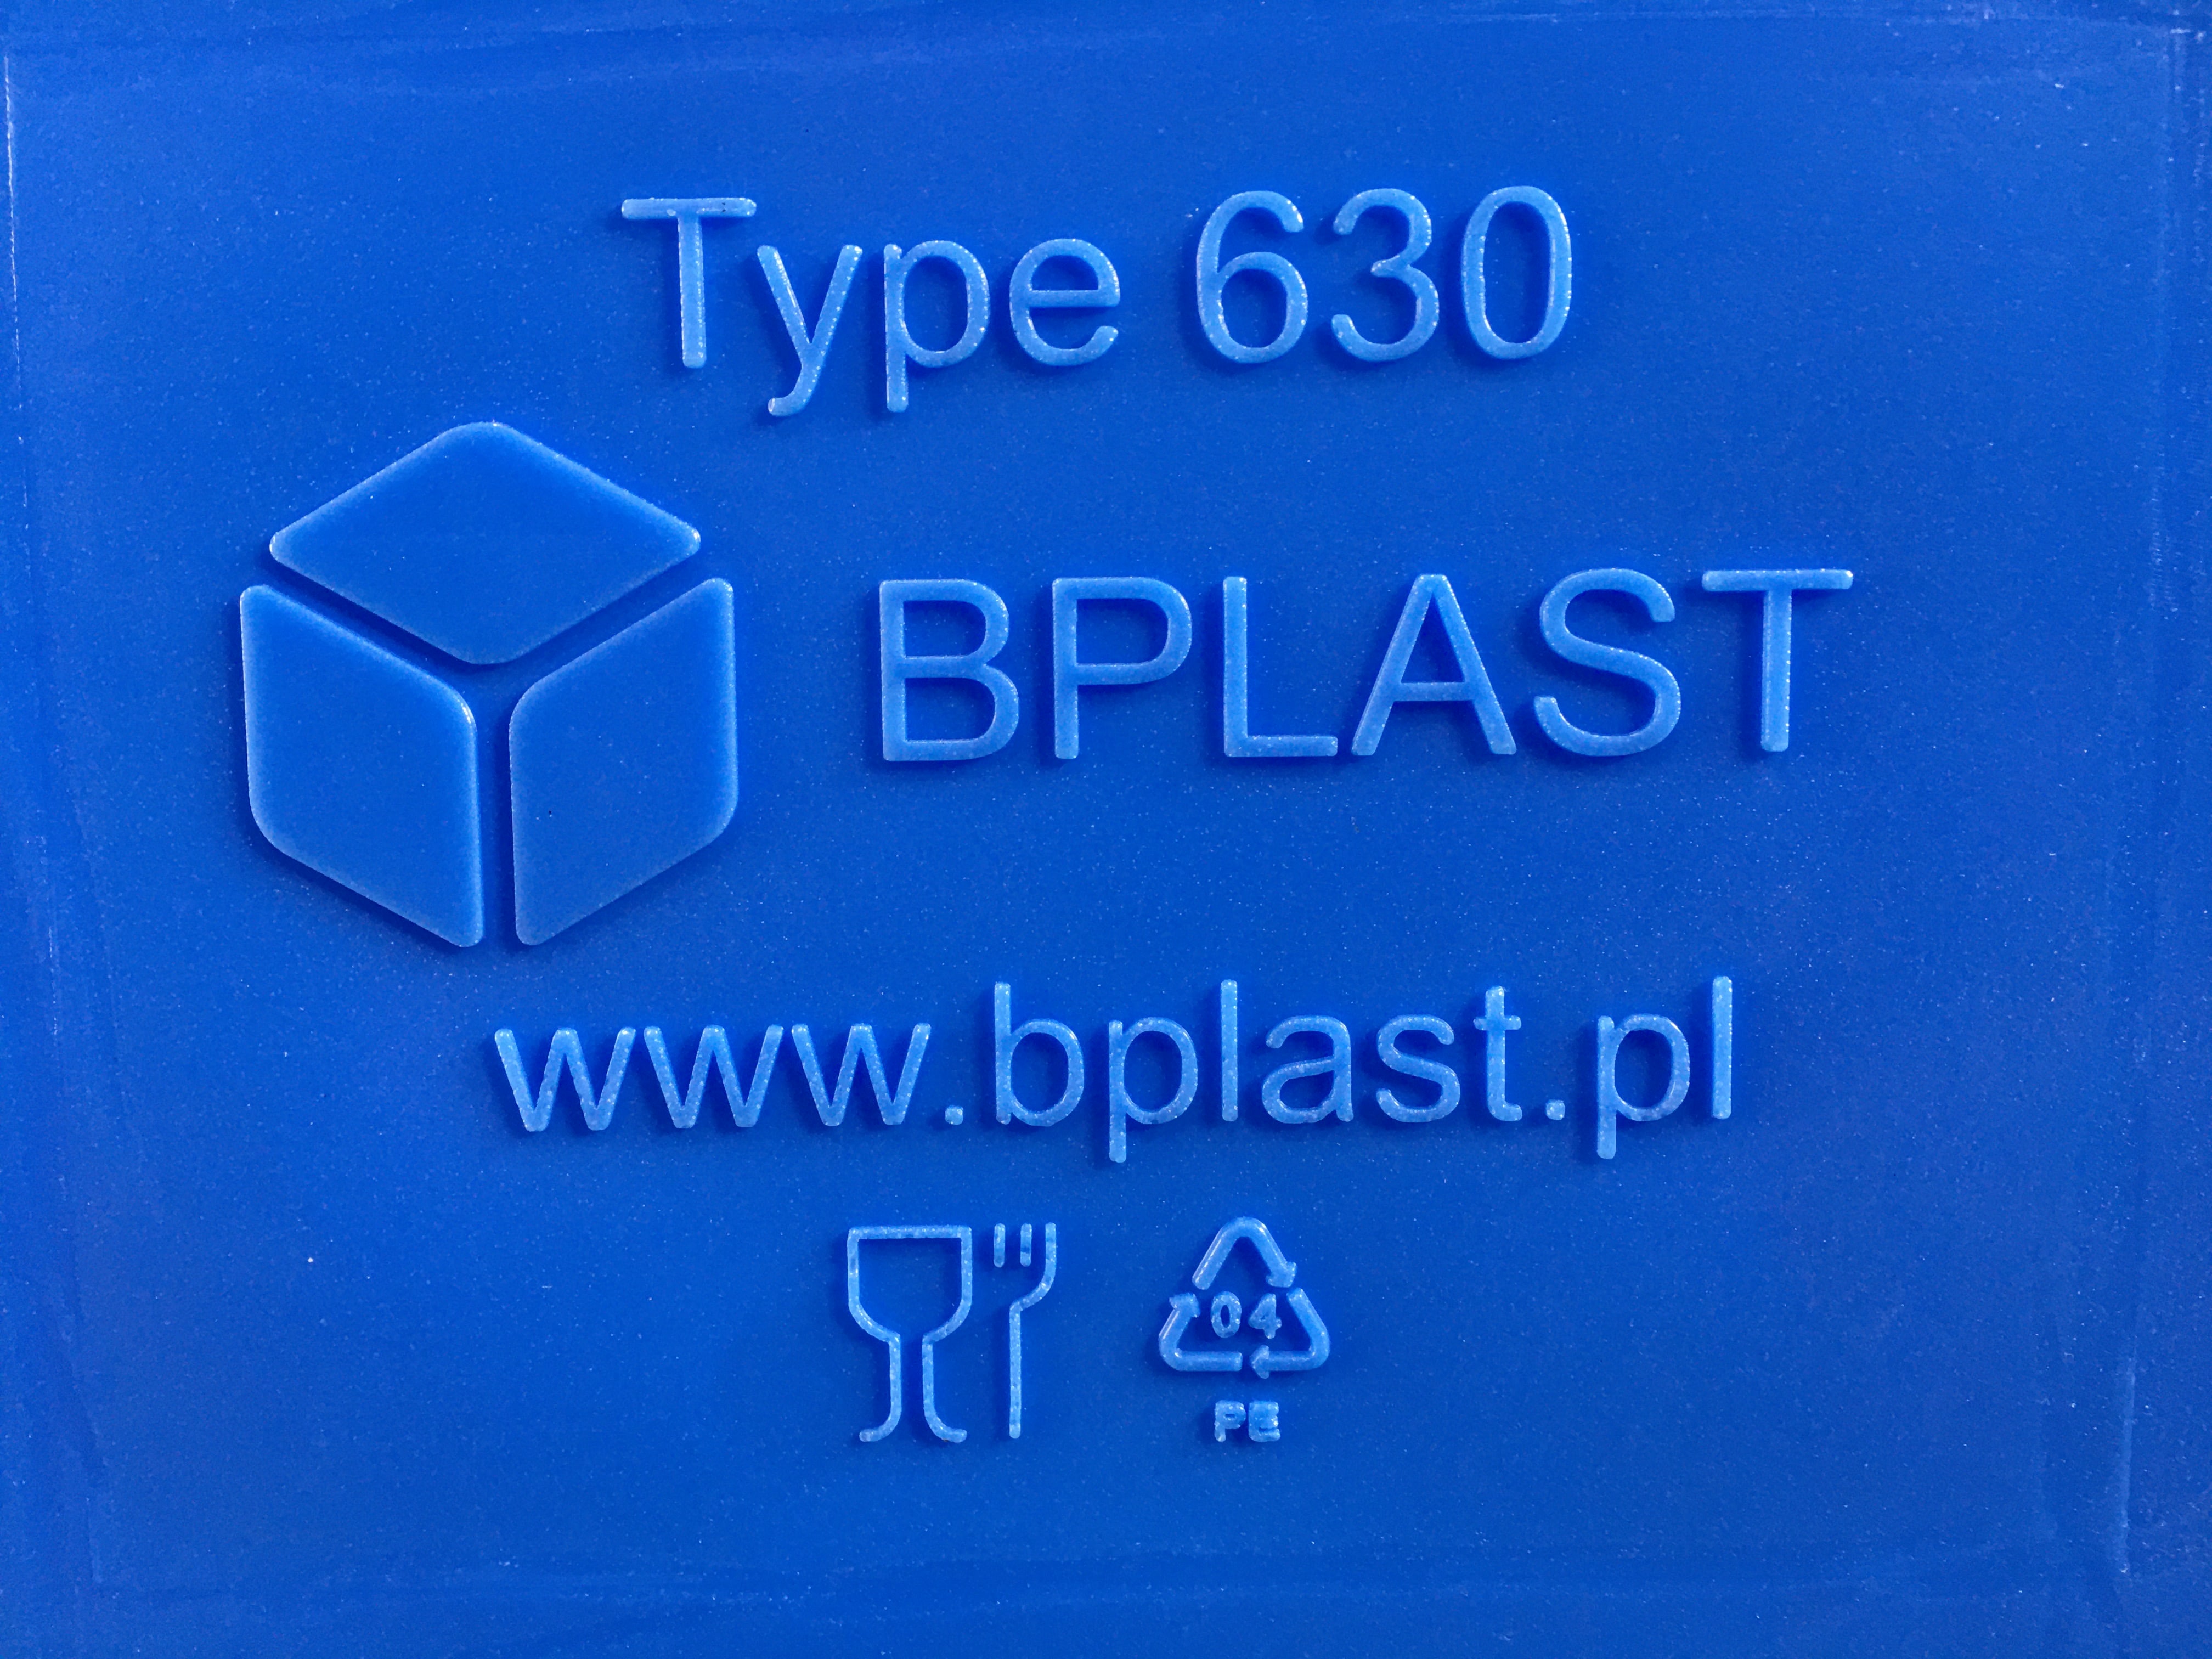 zdjęcie fragmentu pojemnika z logo, typem pojemnika i adresem firmy www.bplast.pl